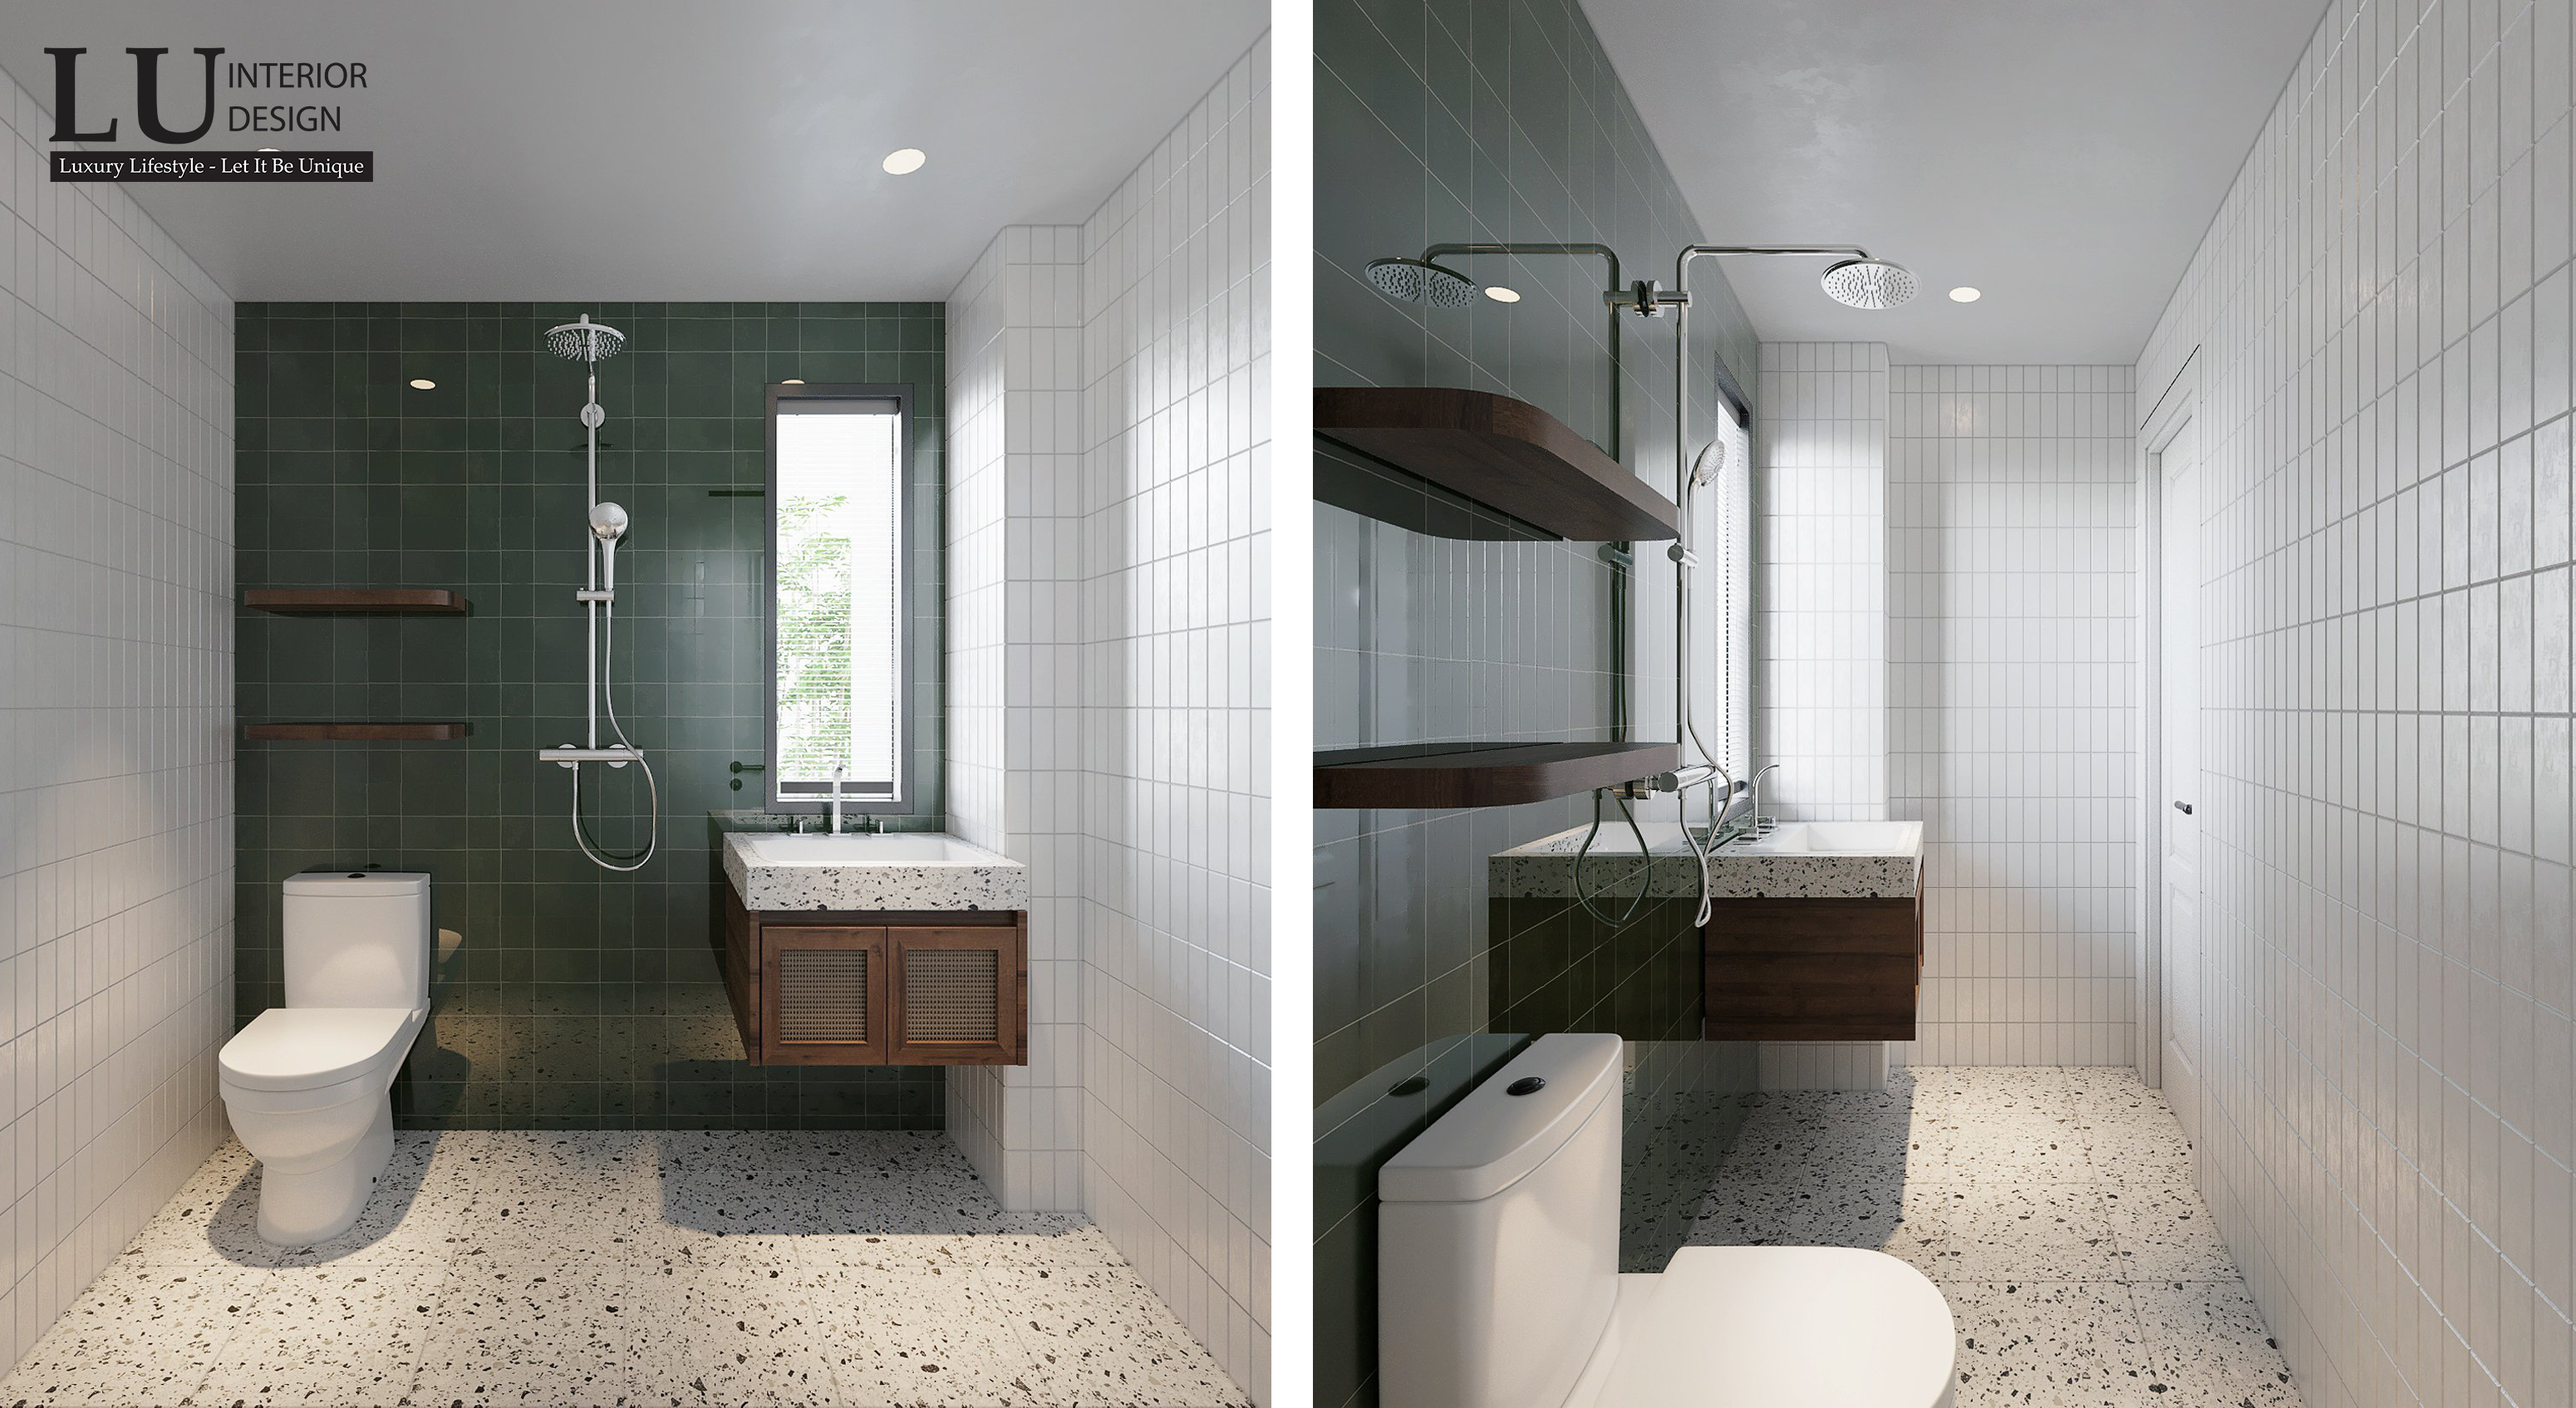 Phòng tắm nhỏ được thiết kế gọn gàng, gạch lát tường bằng gạch trắng mang lại cảm giác mát mẻ và dễ chịu. Ảnh: LU Design